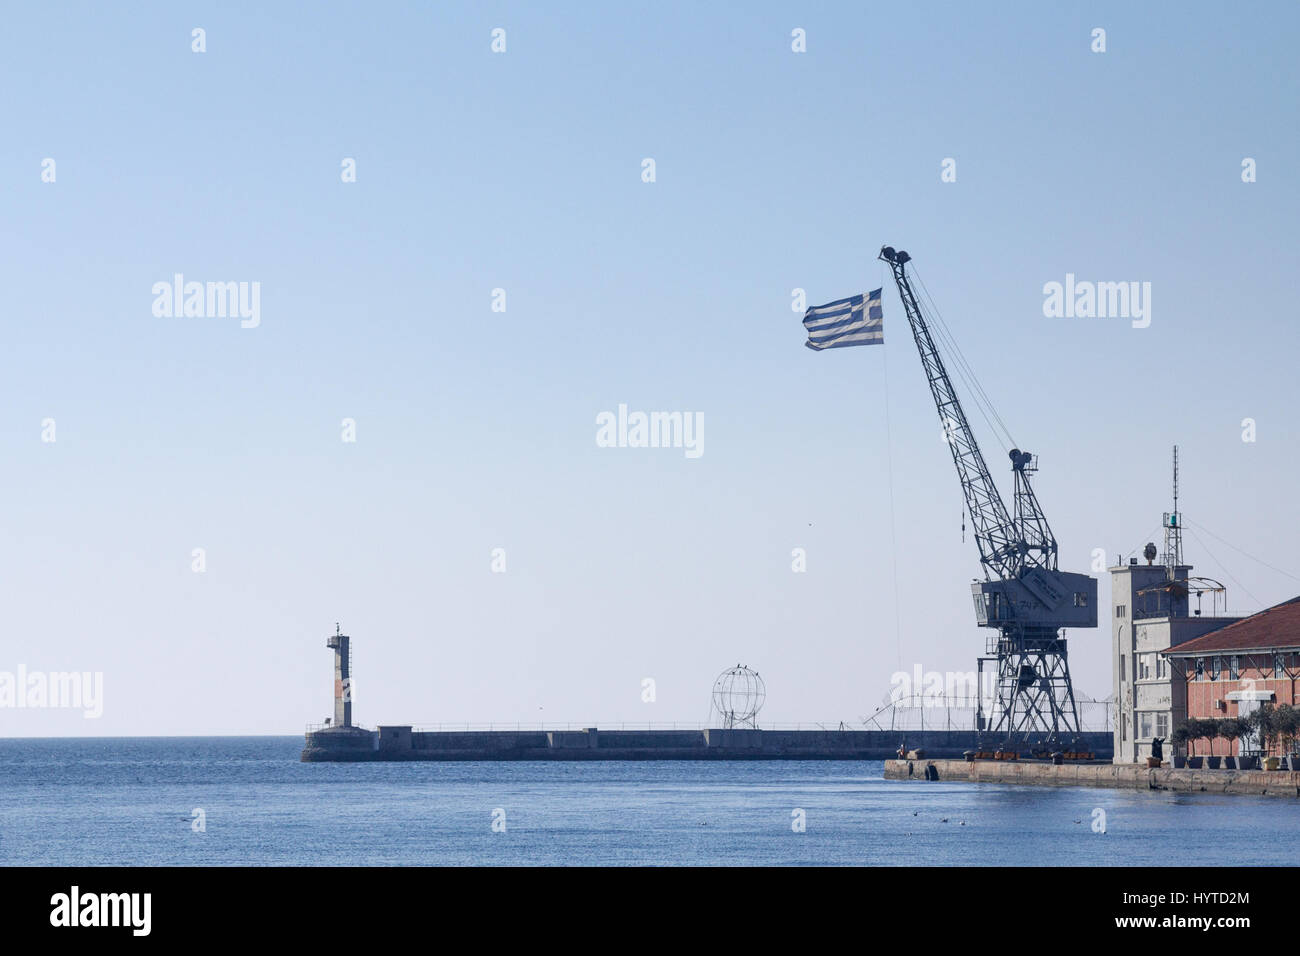 Griechische Flagge auf einem Kran am Pier Thessaloniki, Griechenland-Bild einer griechischen Flagge auf einem Kran gesehen in Thessaloniki, Griechenland, auf dem berühmten Pier von den alten por Stockfoto